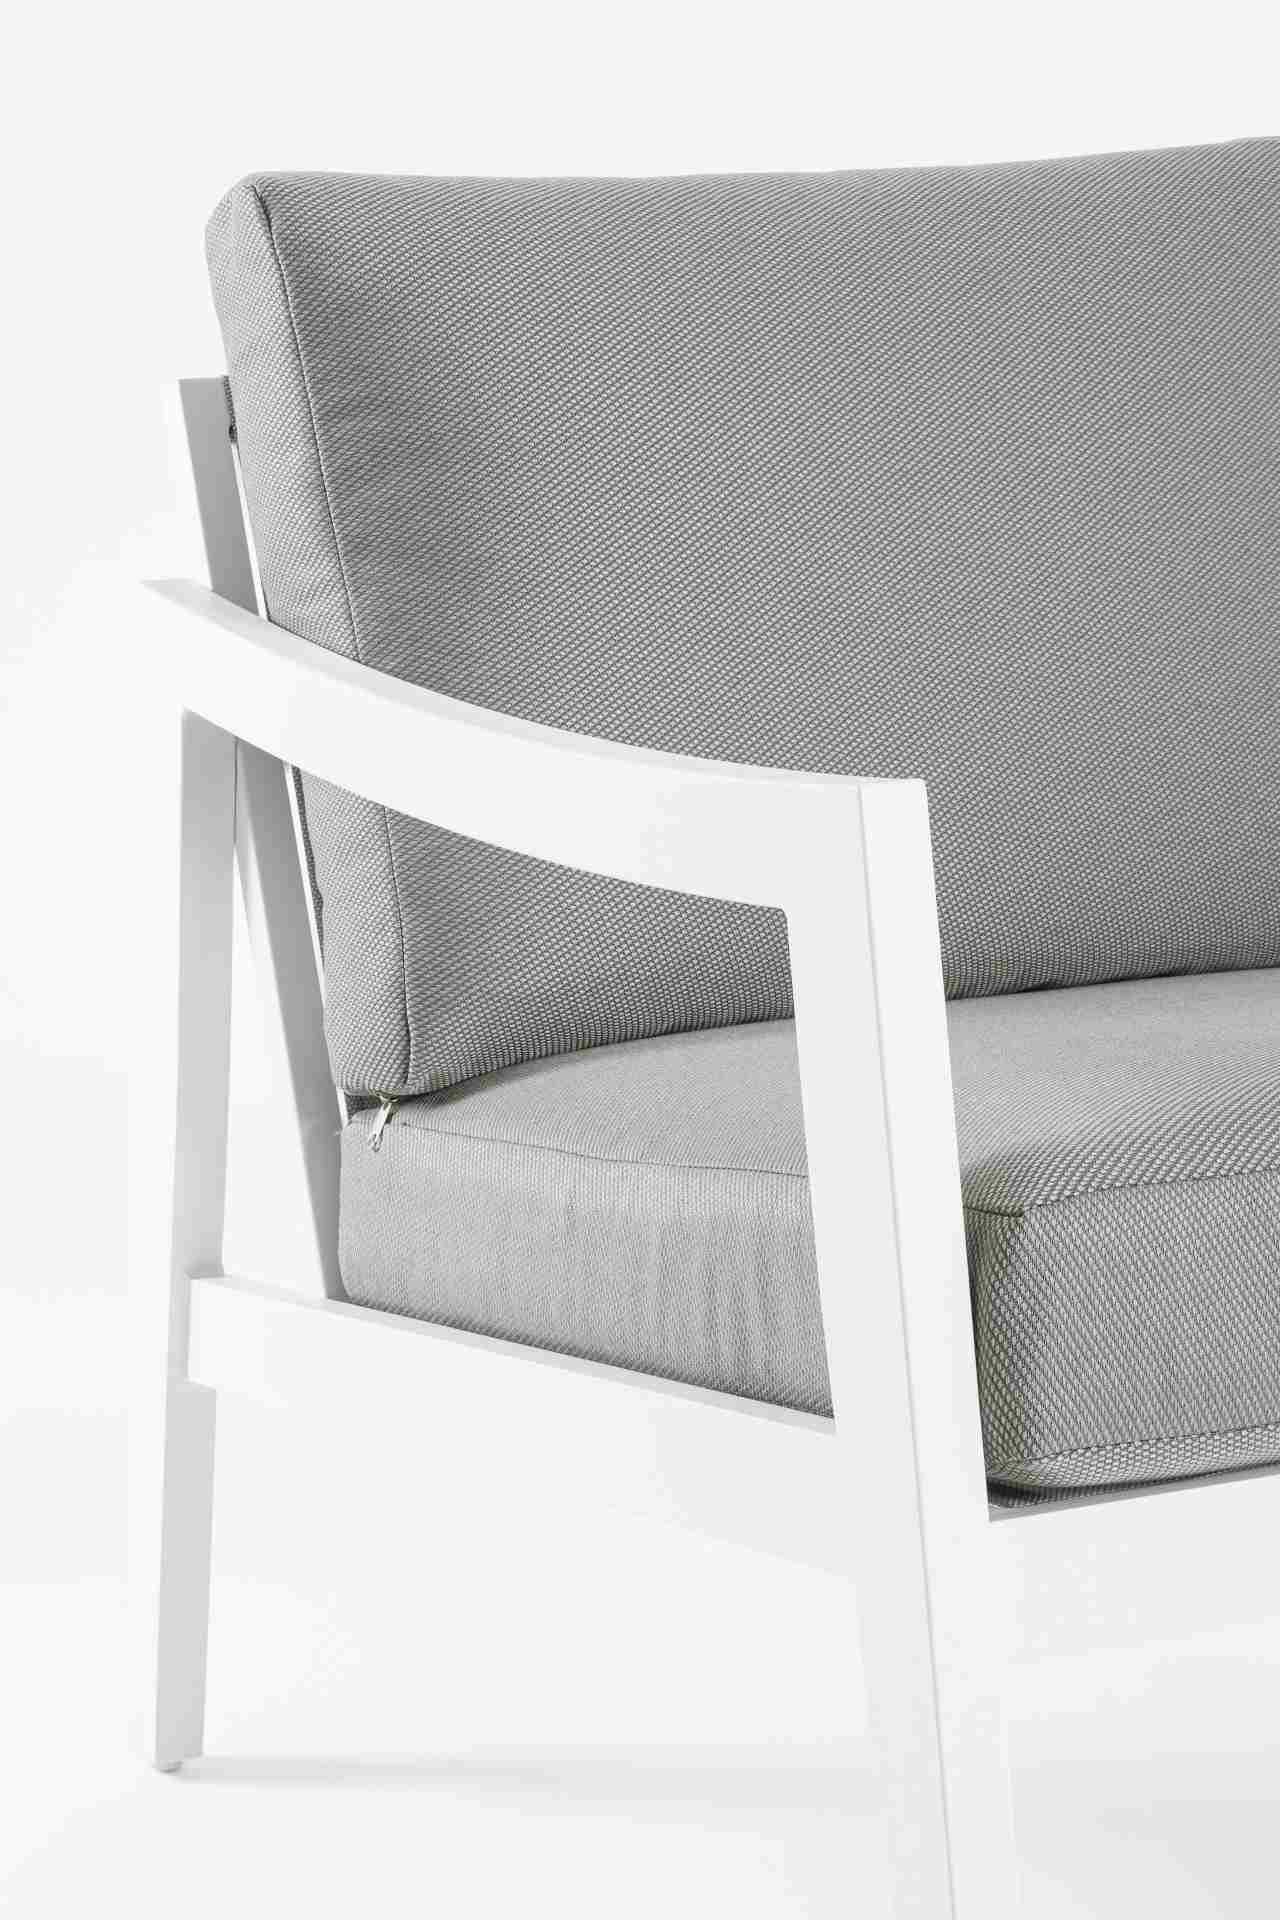 Die Gartenlounge Sirenus überzeugt mit ihrem modernen Design. Gefertigt wurde sie aus Olefin-Stoff, welcher einen grauen Farbton besitzt. Das Gestell ist aus Aluminium und hat eine weiße Farbe. Die Lounge verfügt über eine Sitzhöhe von 43 cm und ist für d